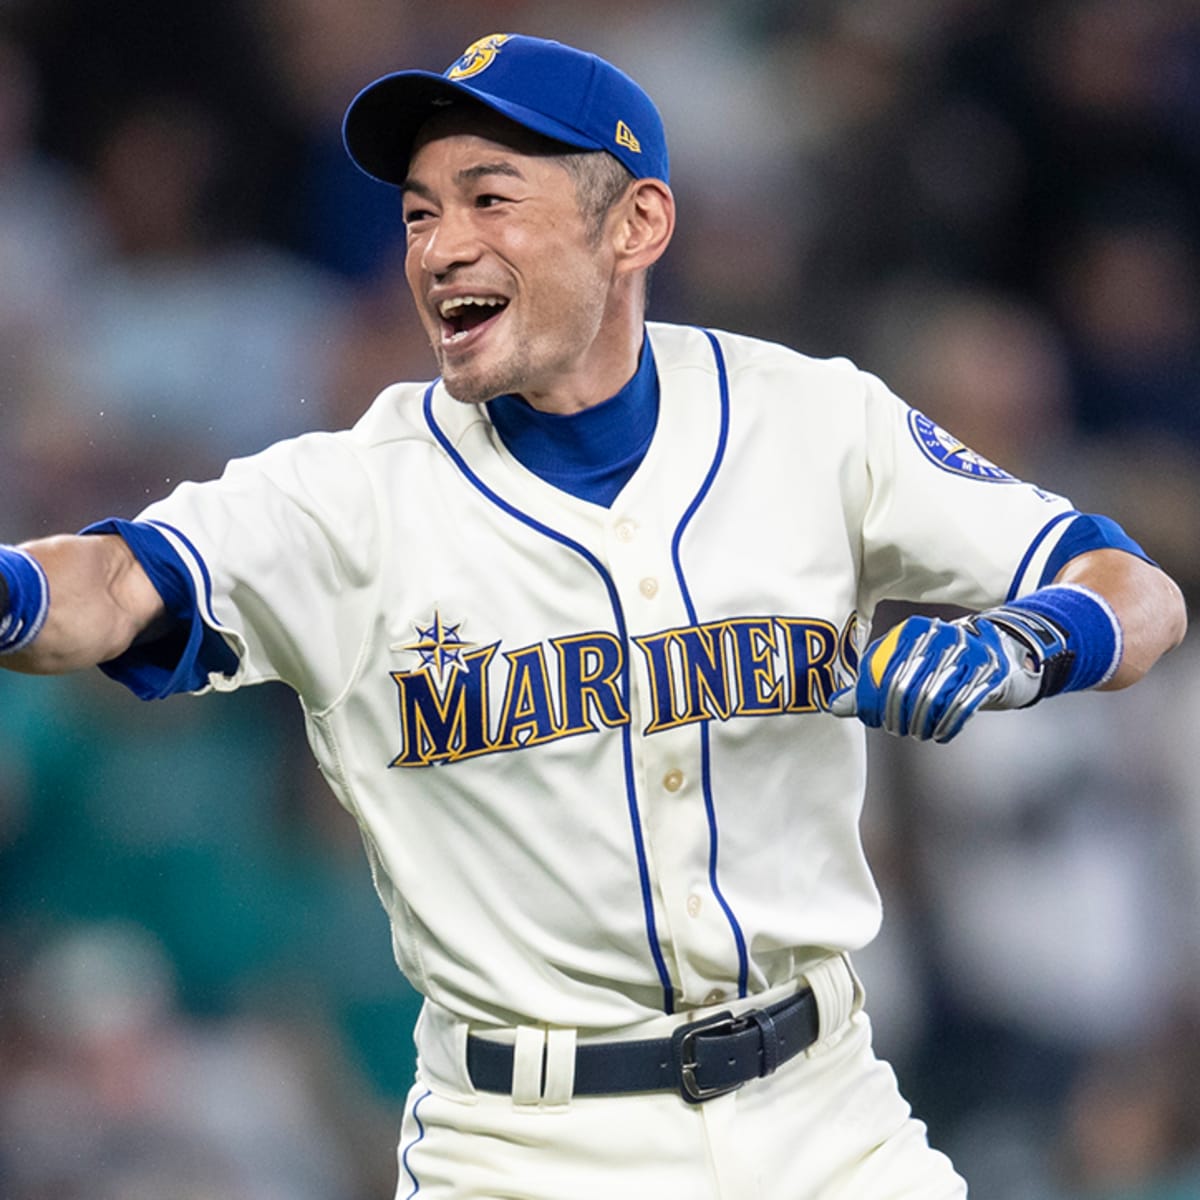 Mariners bring back 44-year-old Ichiro Suzuki